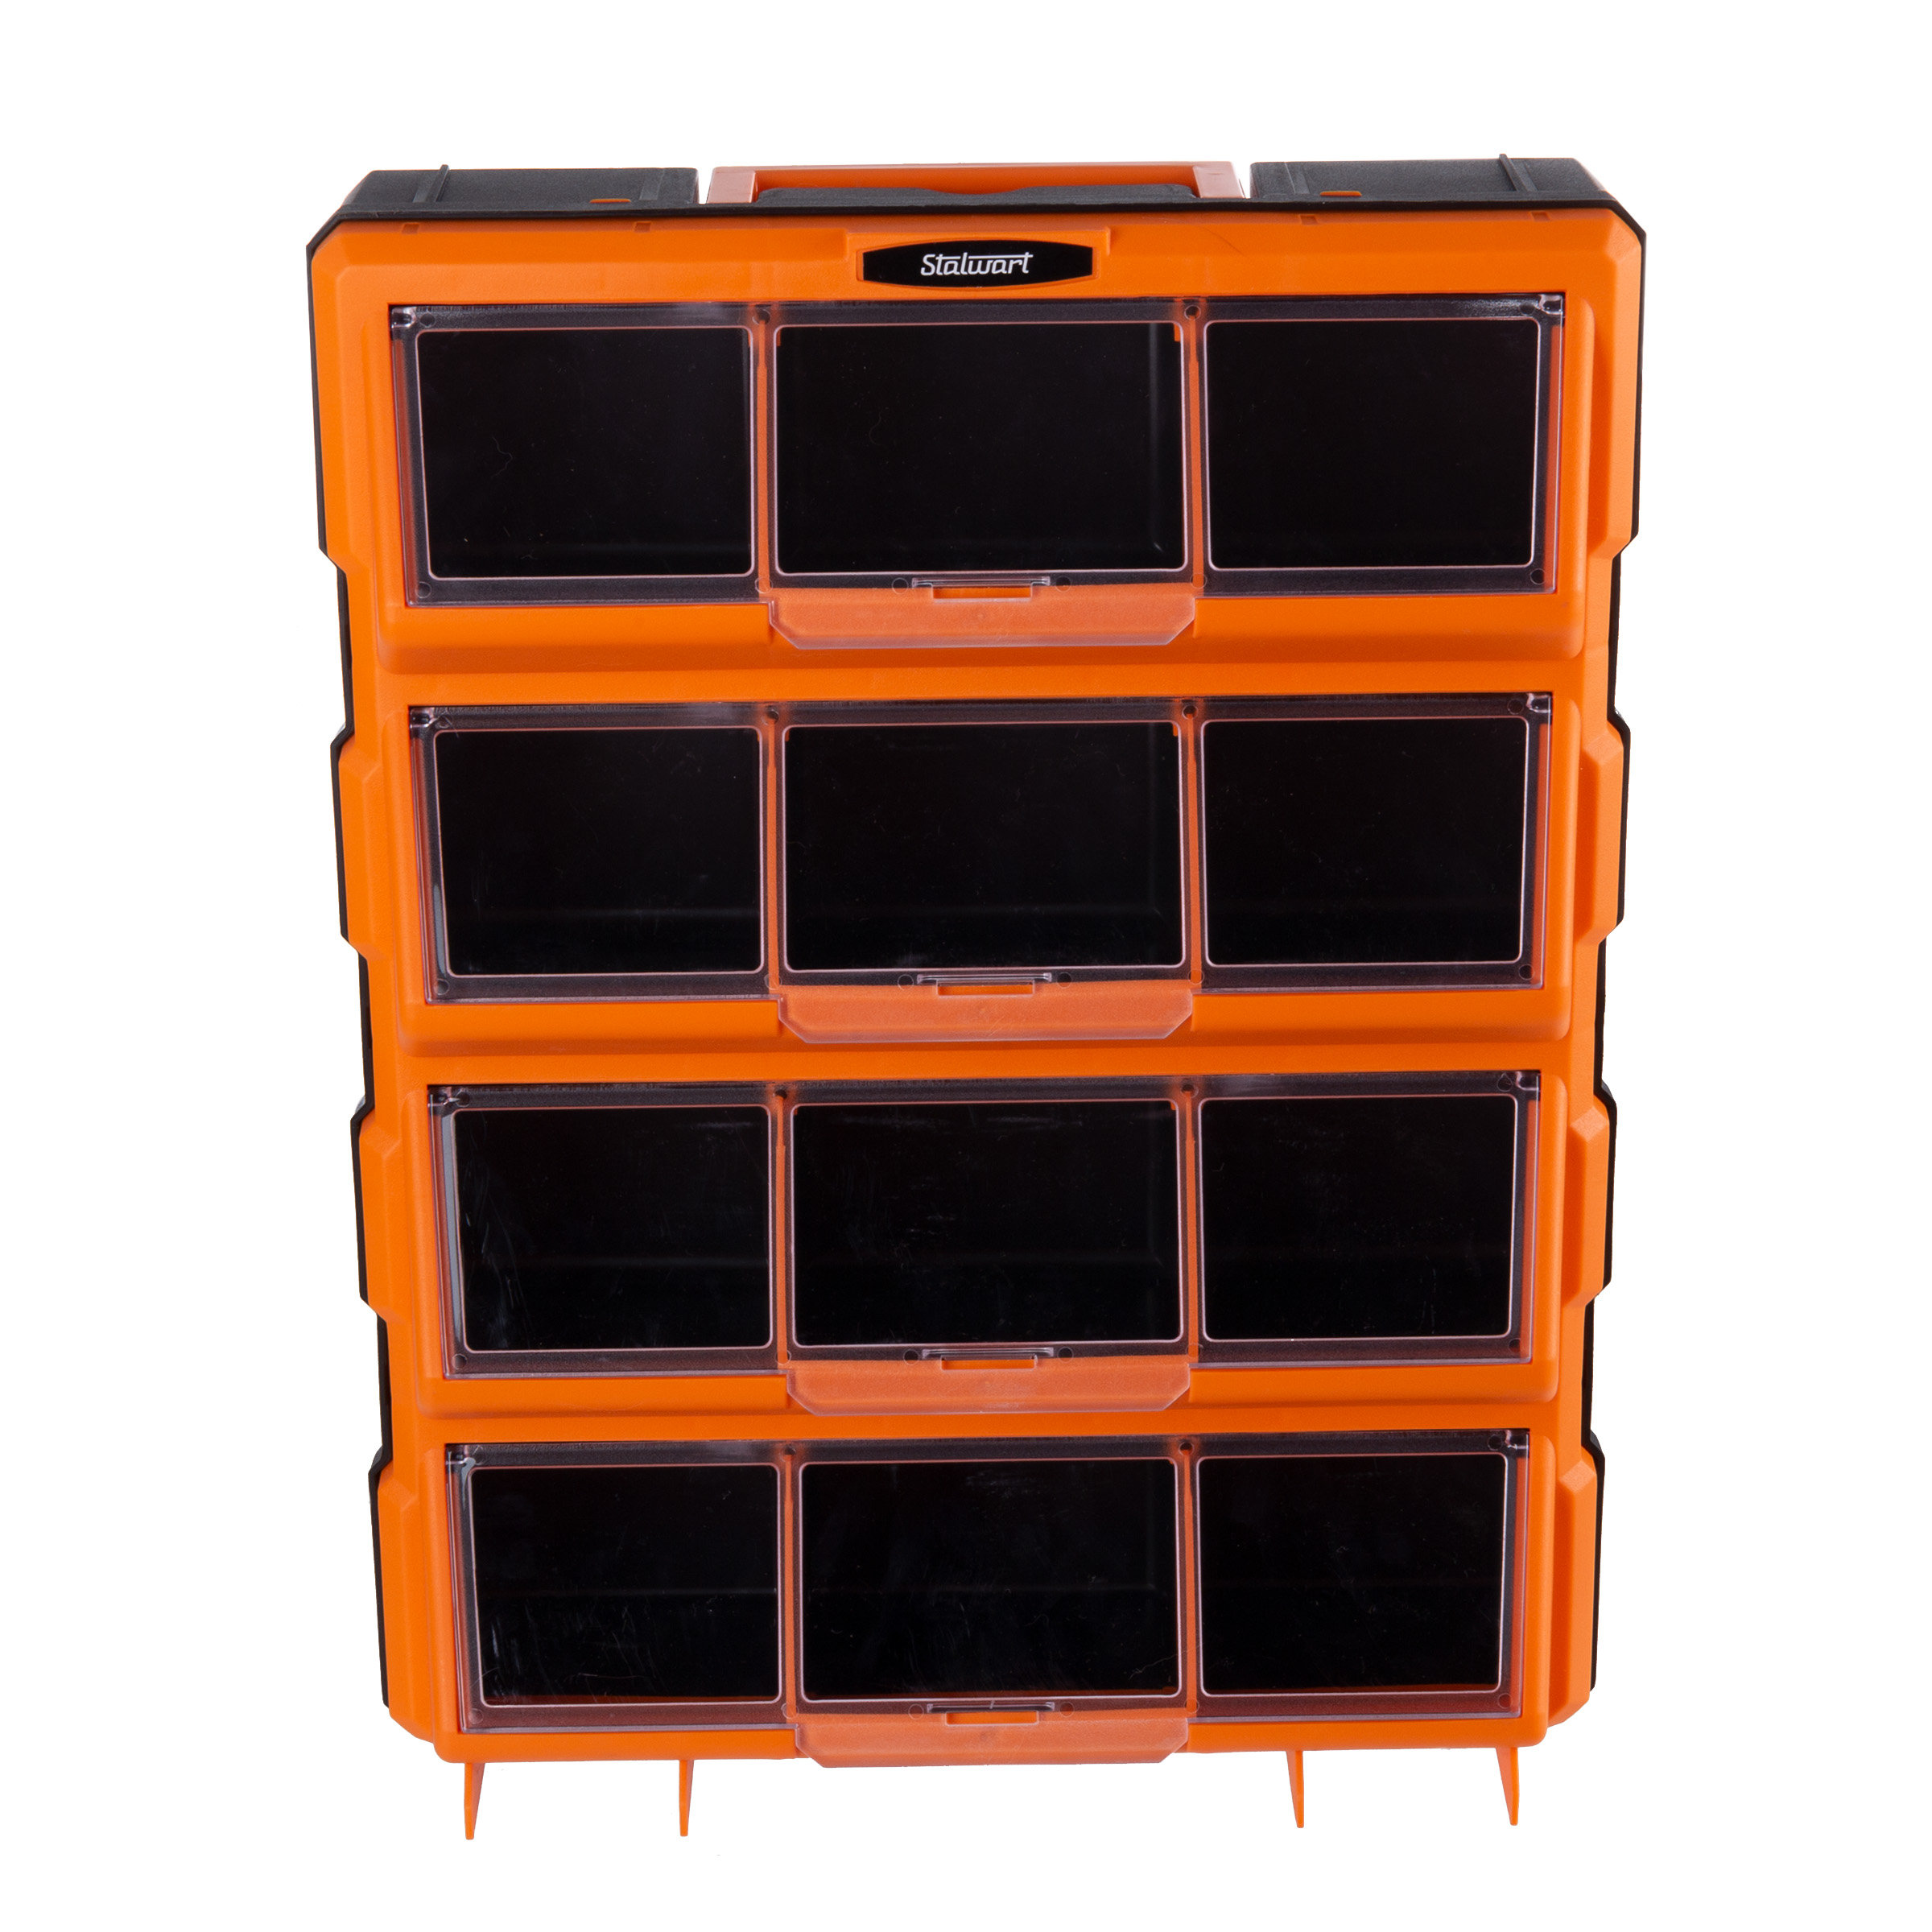 https://assets.wfcdn.com/im/41832824/compr-r85/2288/228890032/stalwart-storage-drawers-screw-organizer-craft-cabinet-garage-organization-solution-for-hardware.jpg